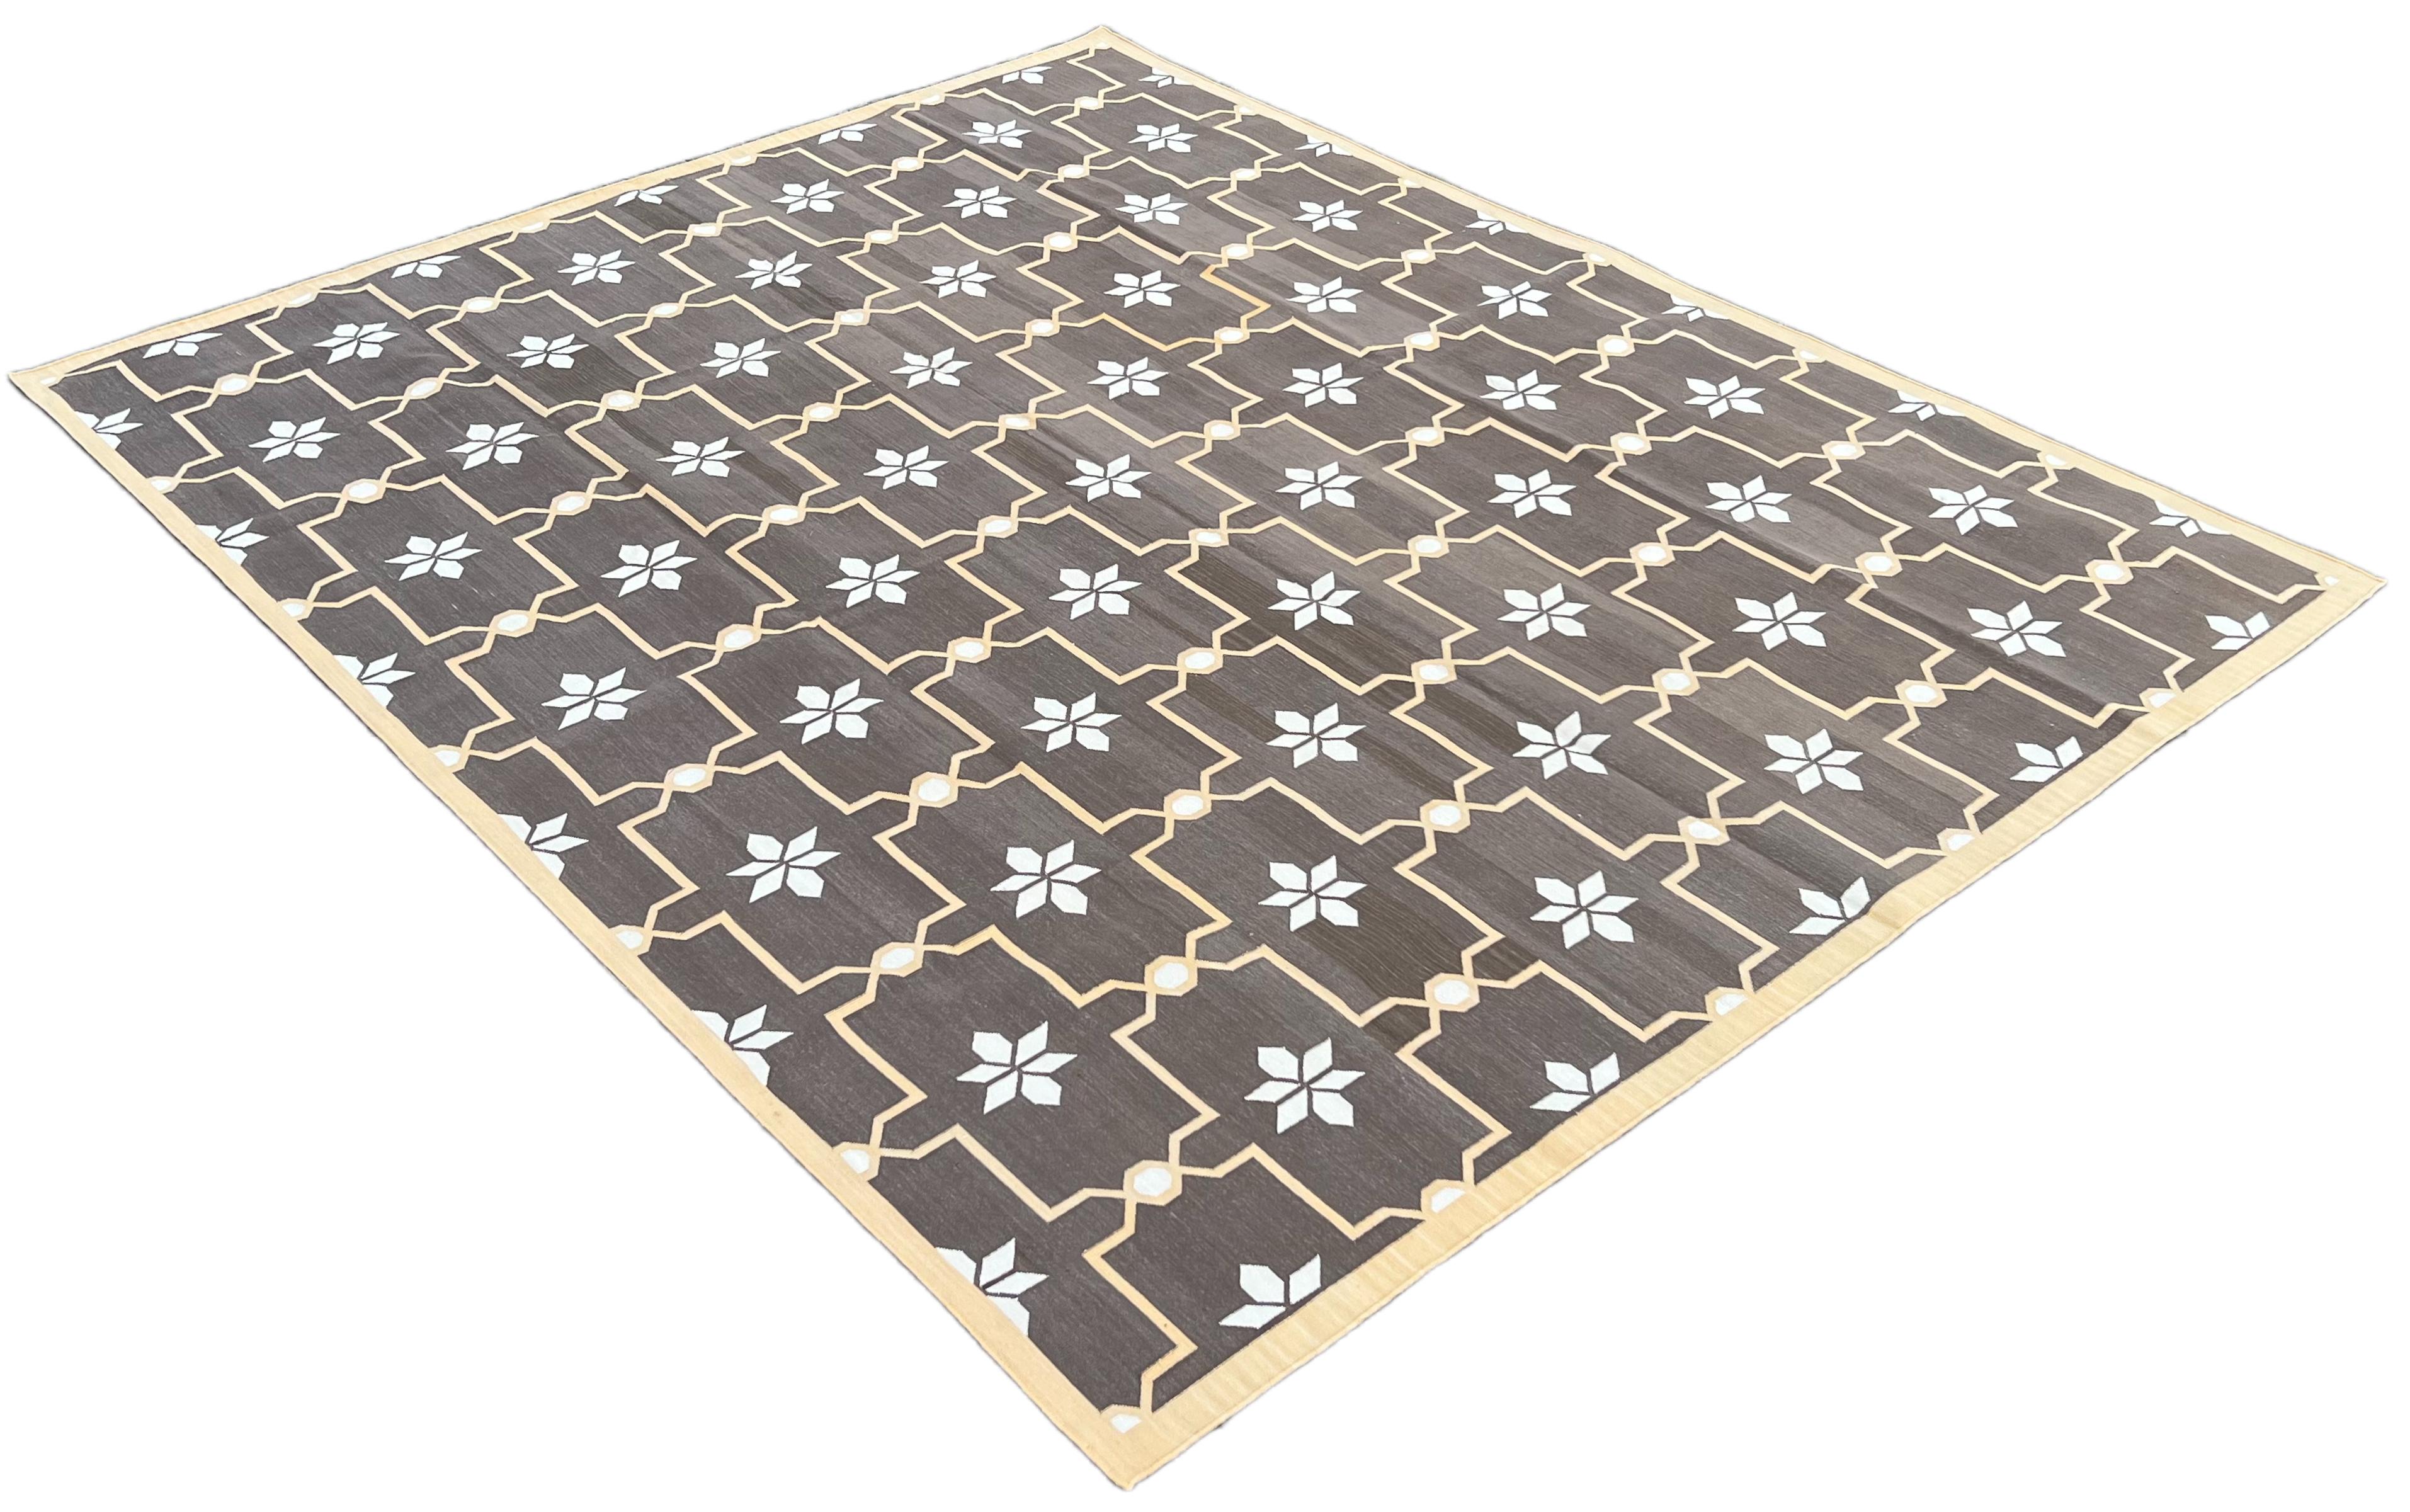 Baumwolle natürlich pflanzlich gefärbt Kaffee braun und Creme Blumenmuster indischen Teppich-8'x10'
Diese speziellen flachgewebten Dhurries werden aus 15-fachem Garn aus 100% Baumwolle handgewebt. Aufgrund der speziellen Fertigungstechniken, die zur